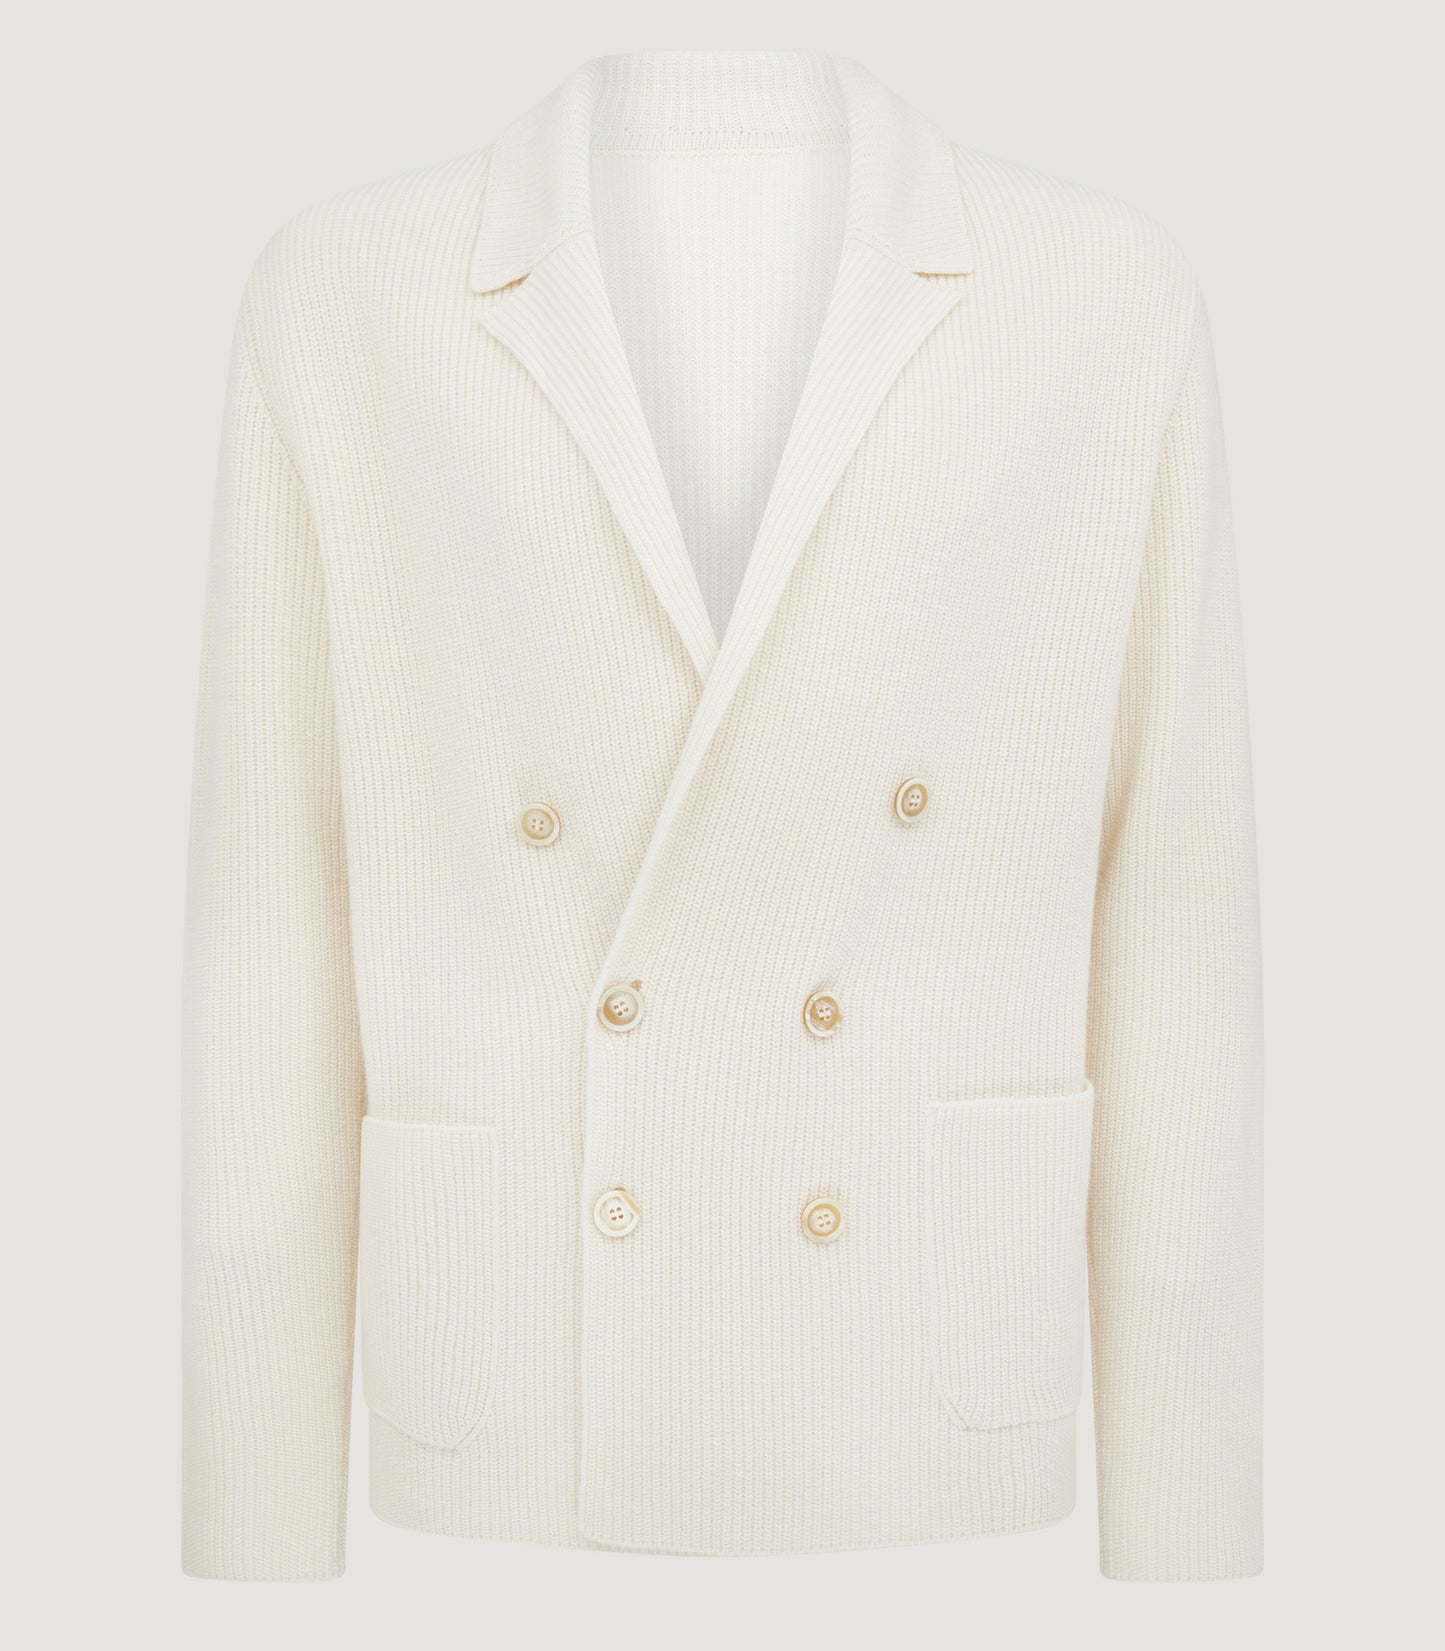 Men's Cashmere Linen Jacket Cardigan